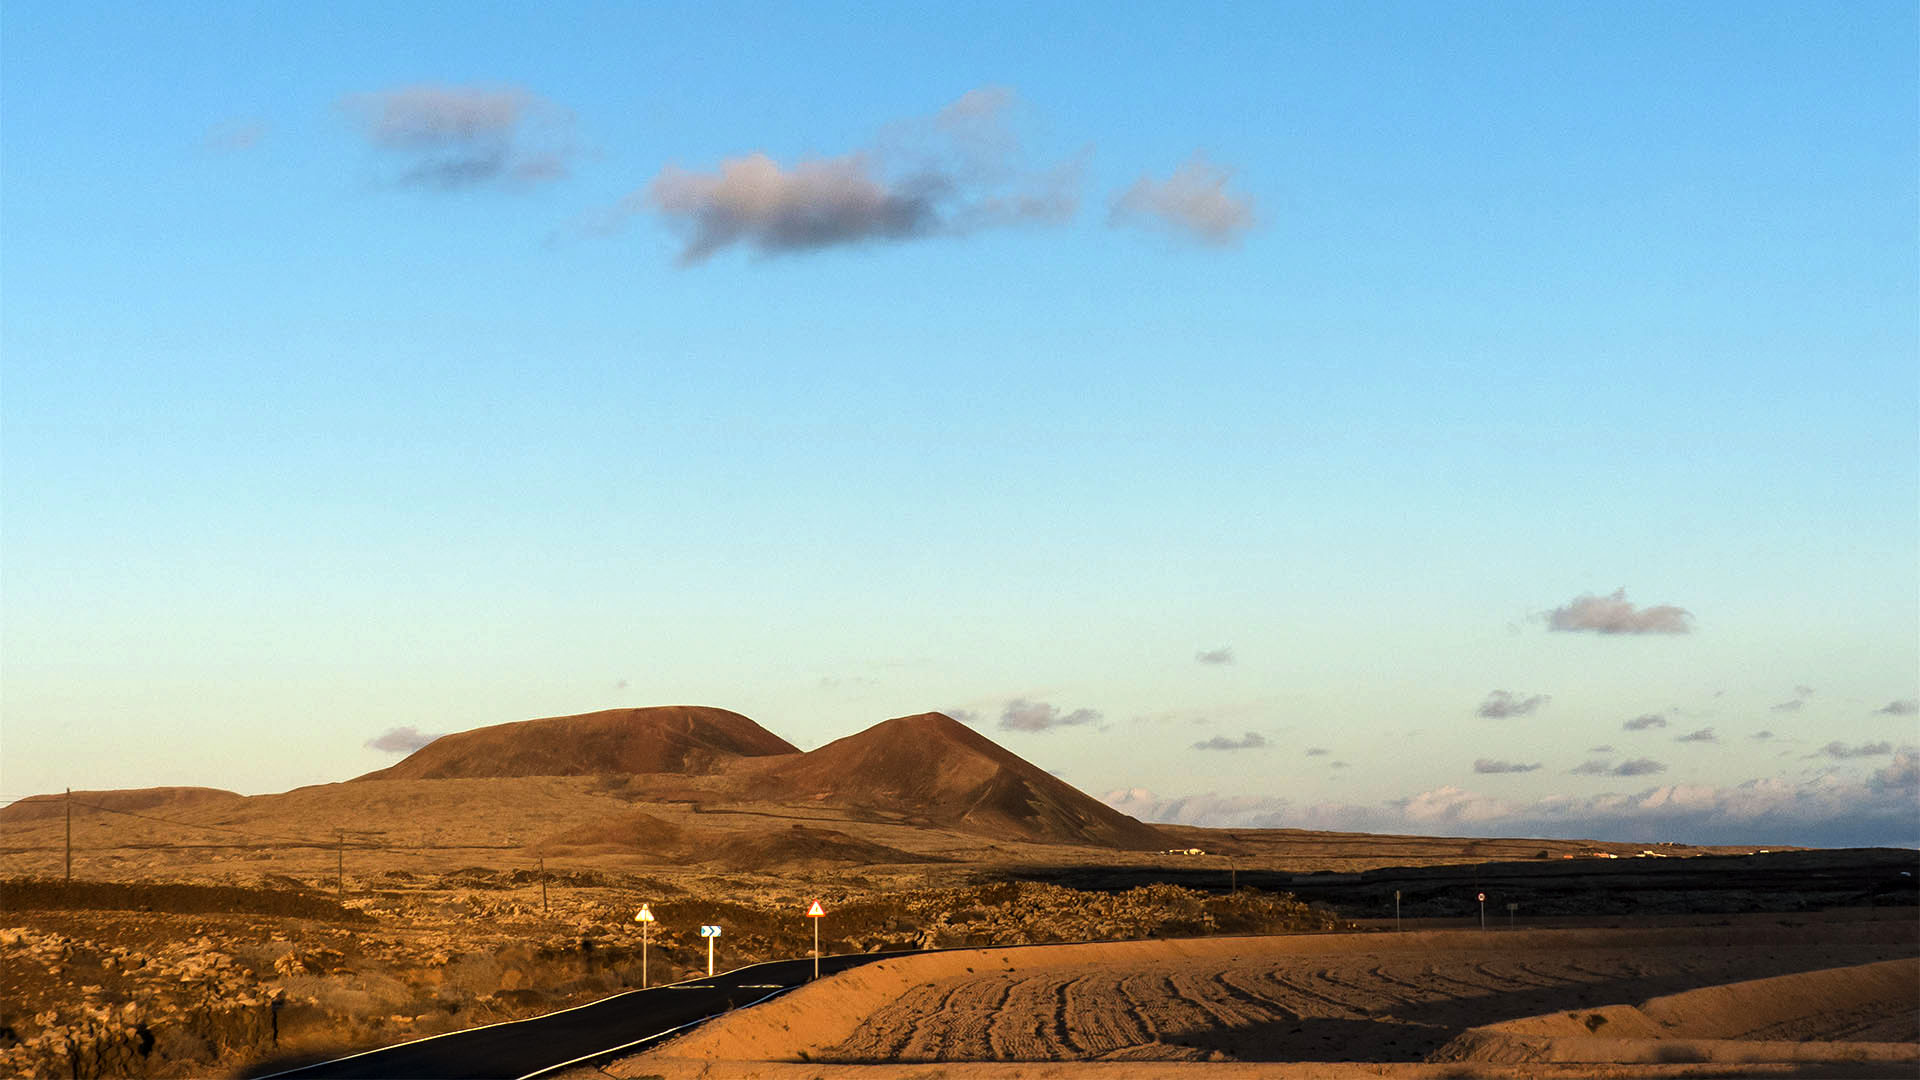 Städte und Ortschaften Fuerteventuras: Lajares